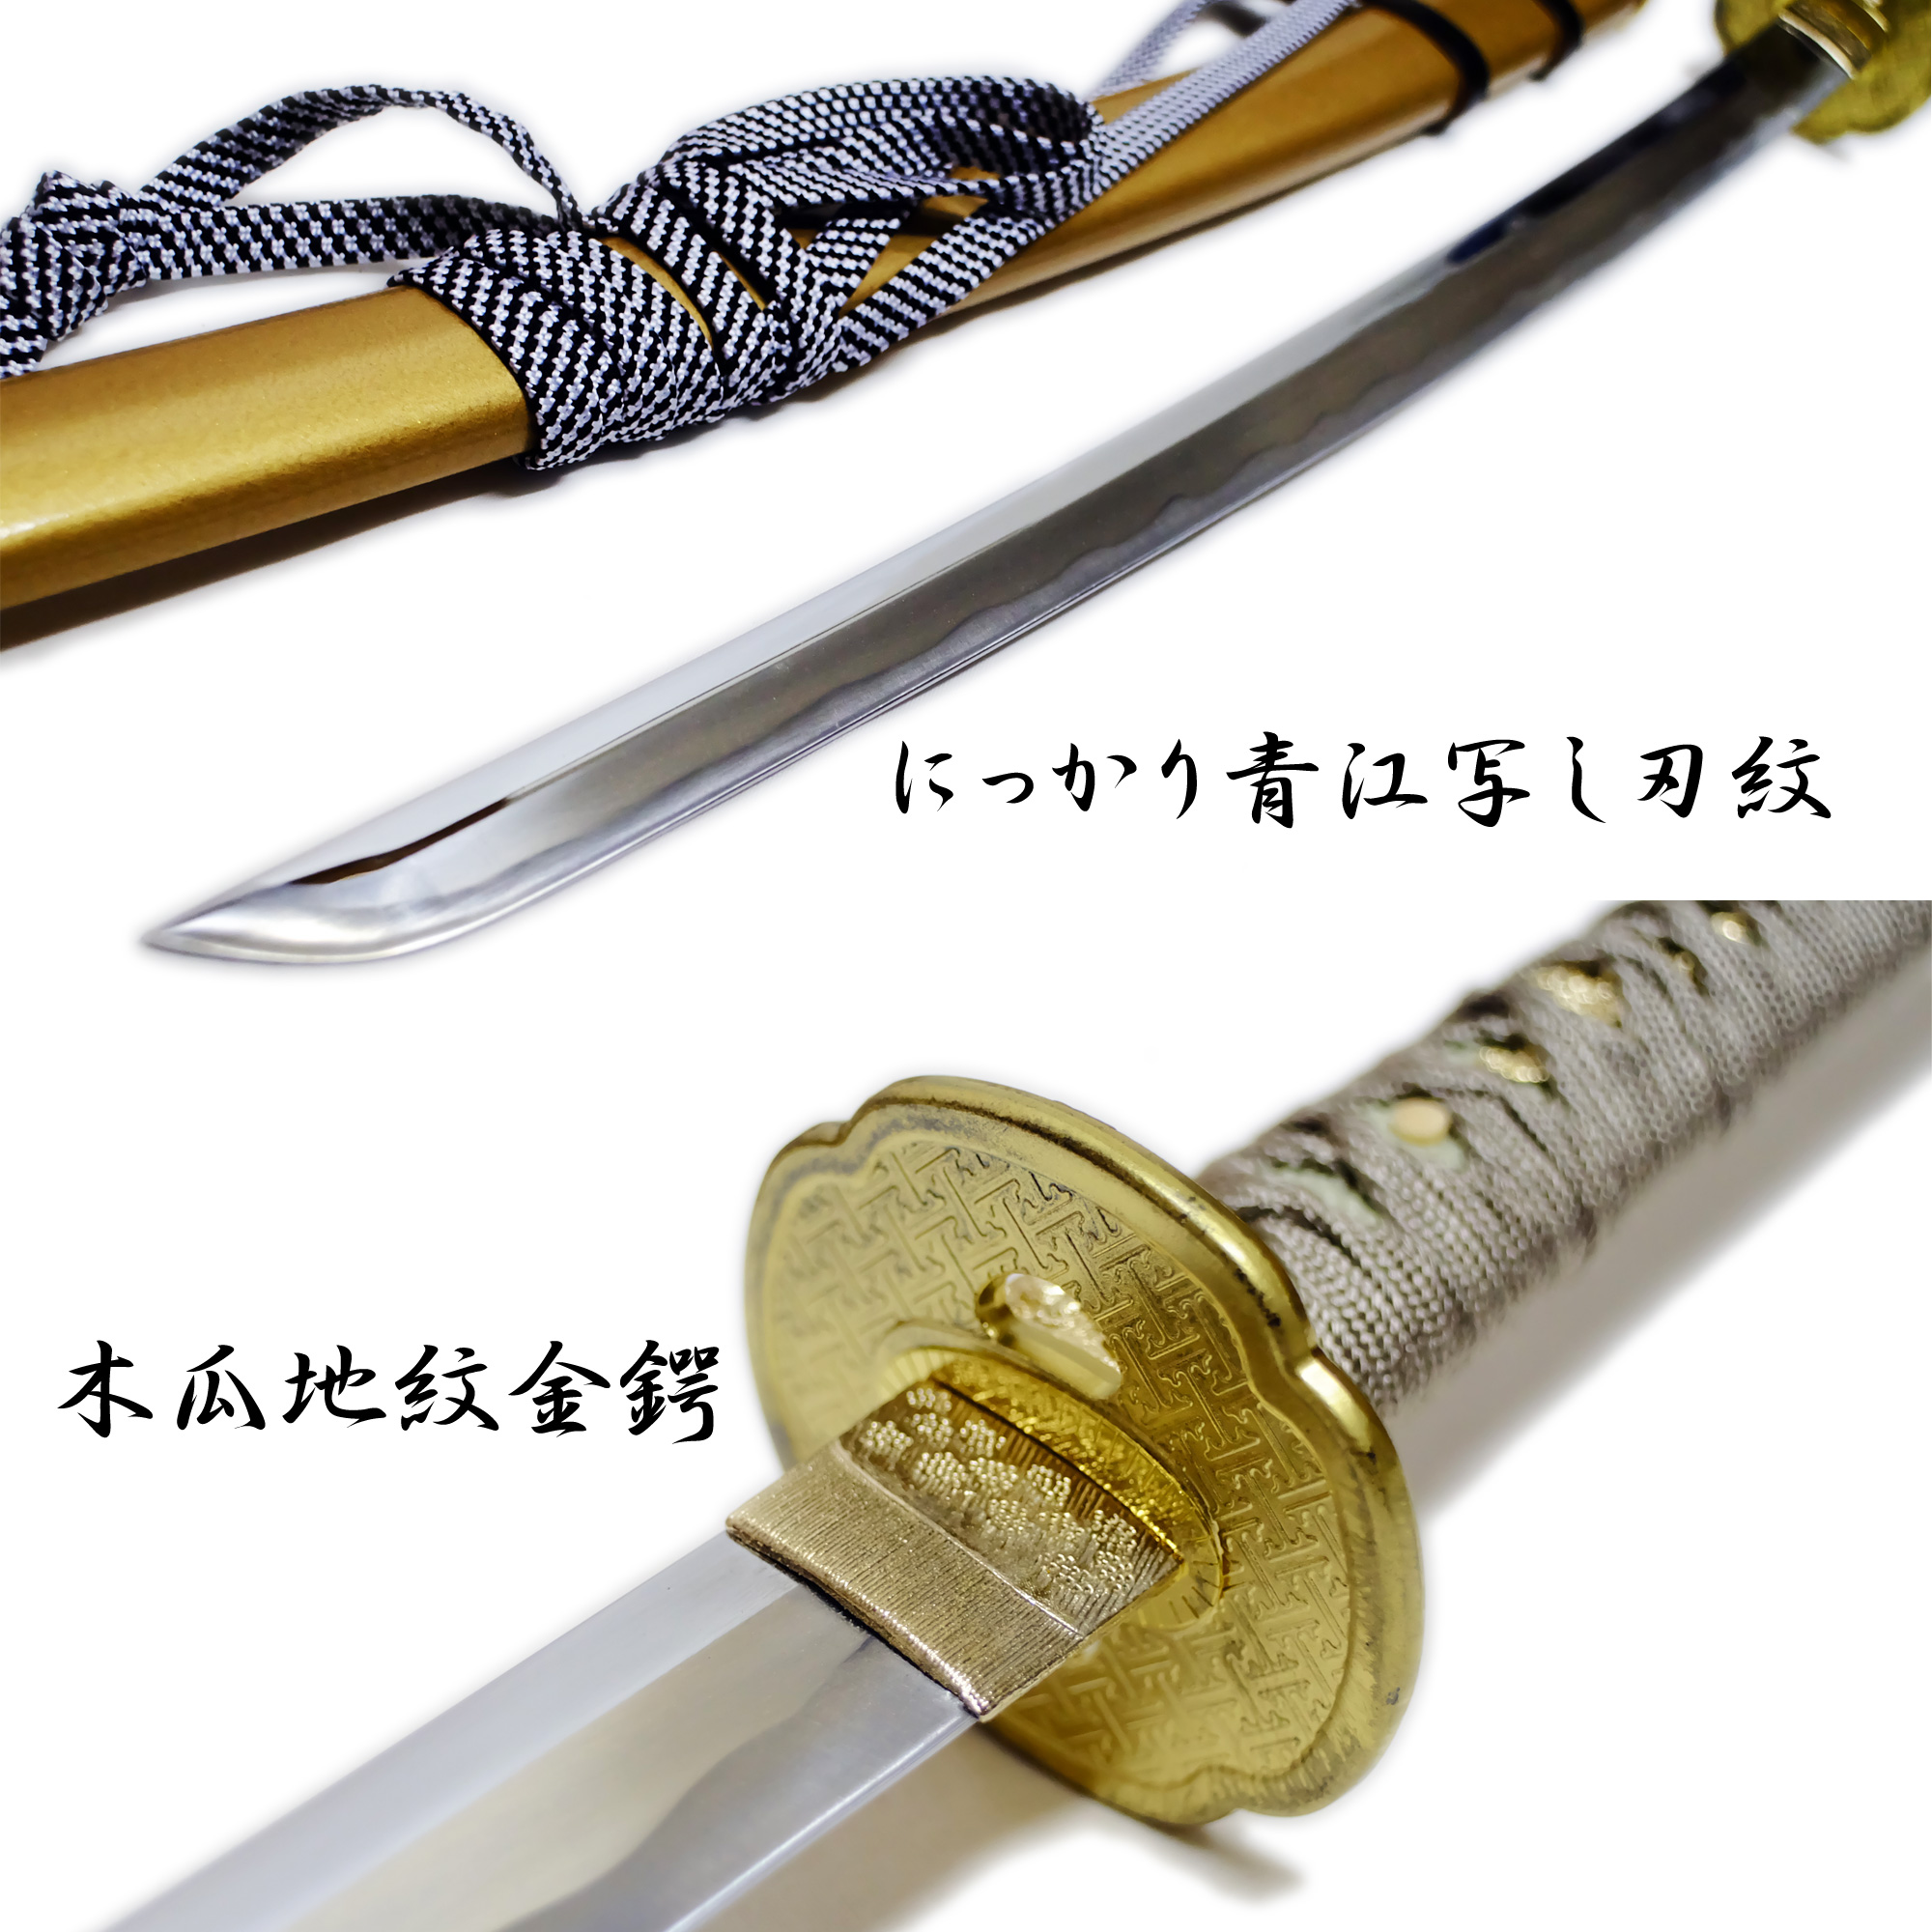 匠刀房 にっかり青江 中刀 NEU-155 - 刀匠シリーズ 模造刀